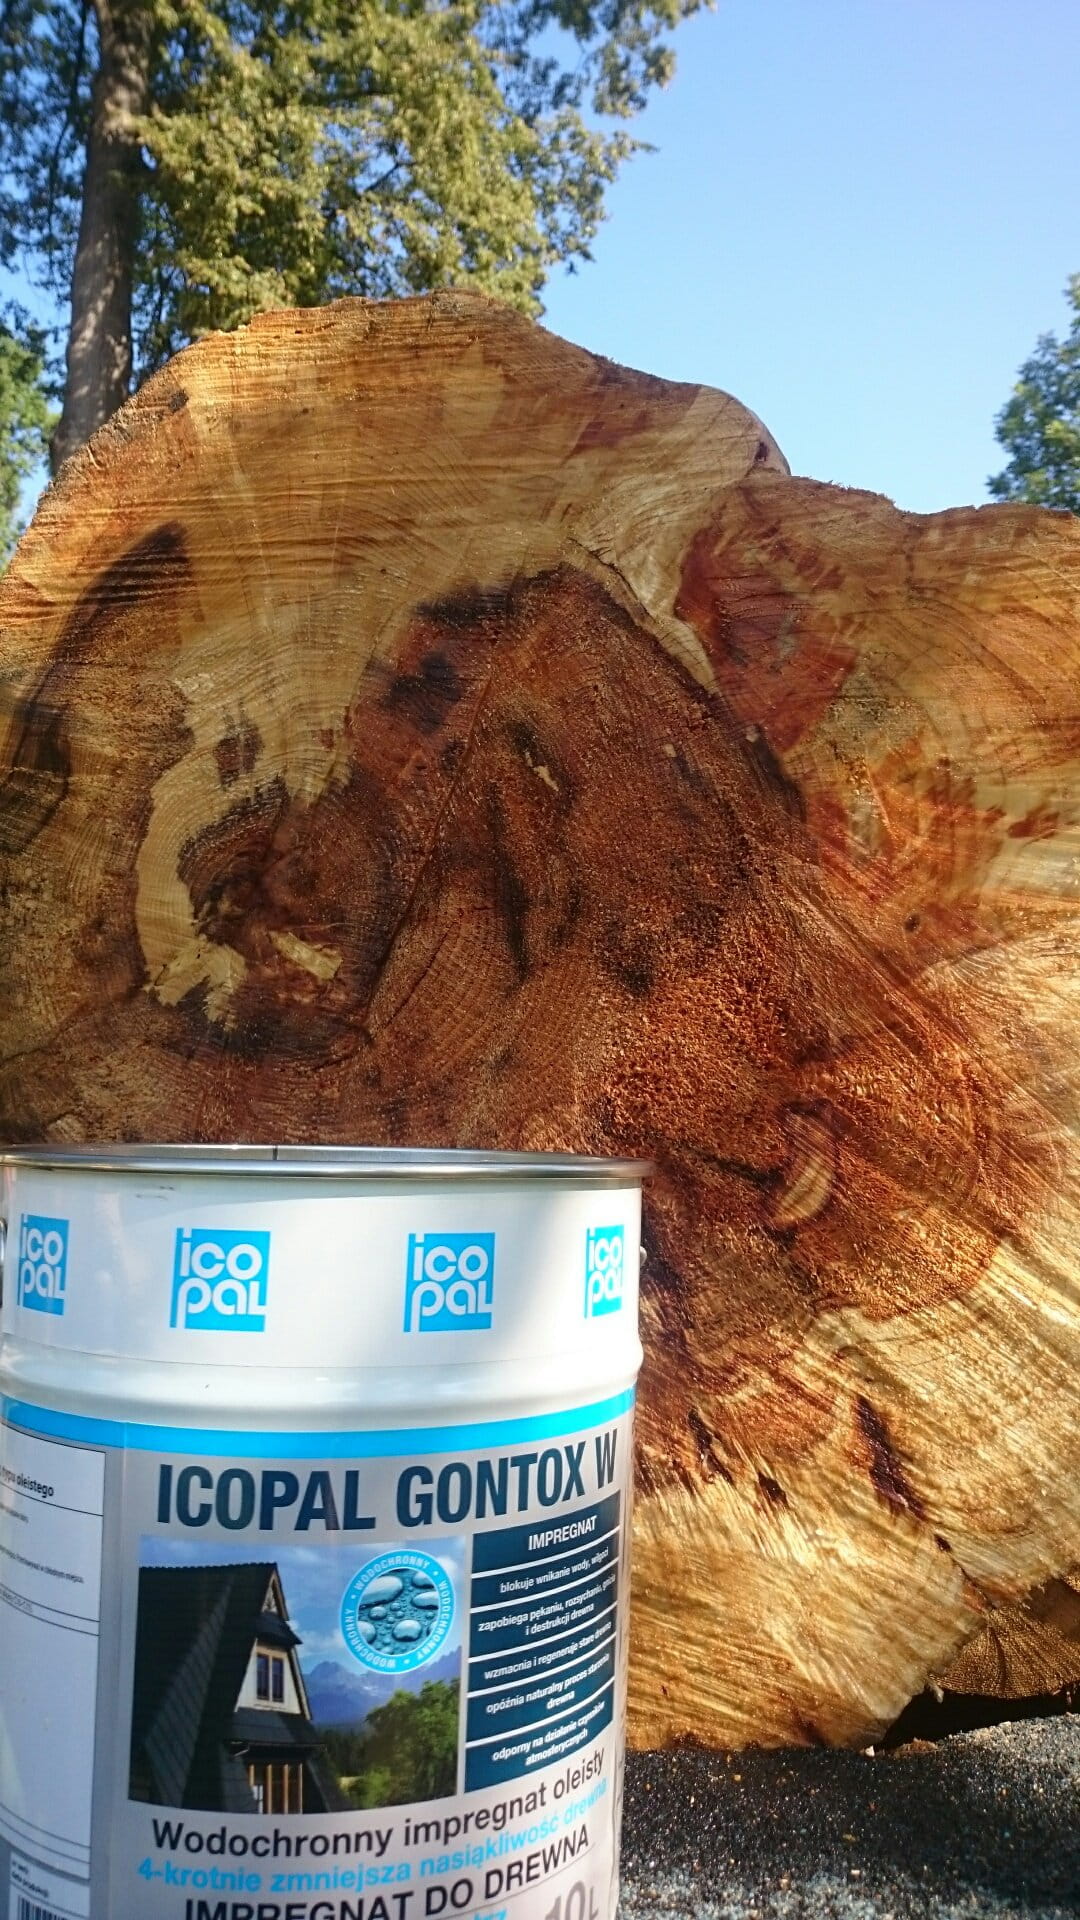 Impregnat do drewna bezbarwny rozpuszczalnikowy Icopal Gontox W